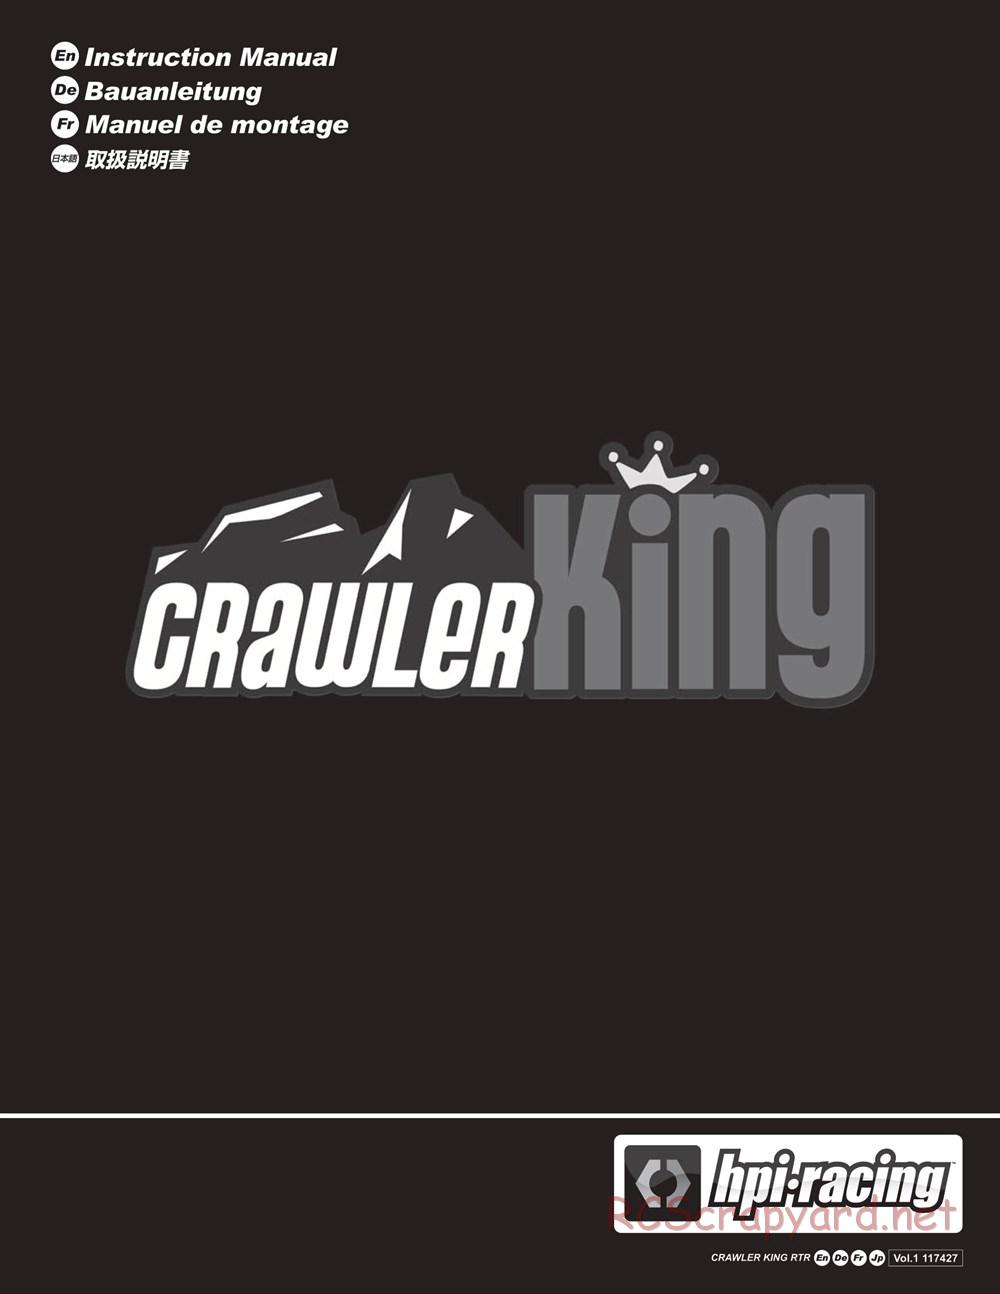 HPI - Crawler King - Manual - Page 1